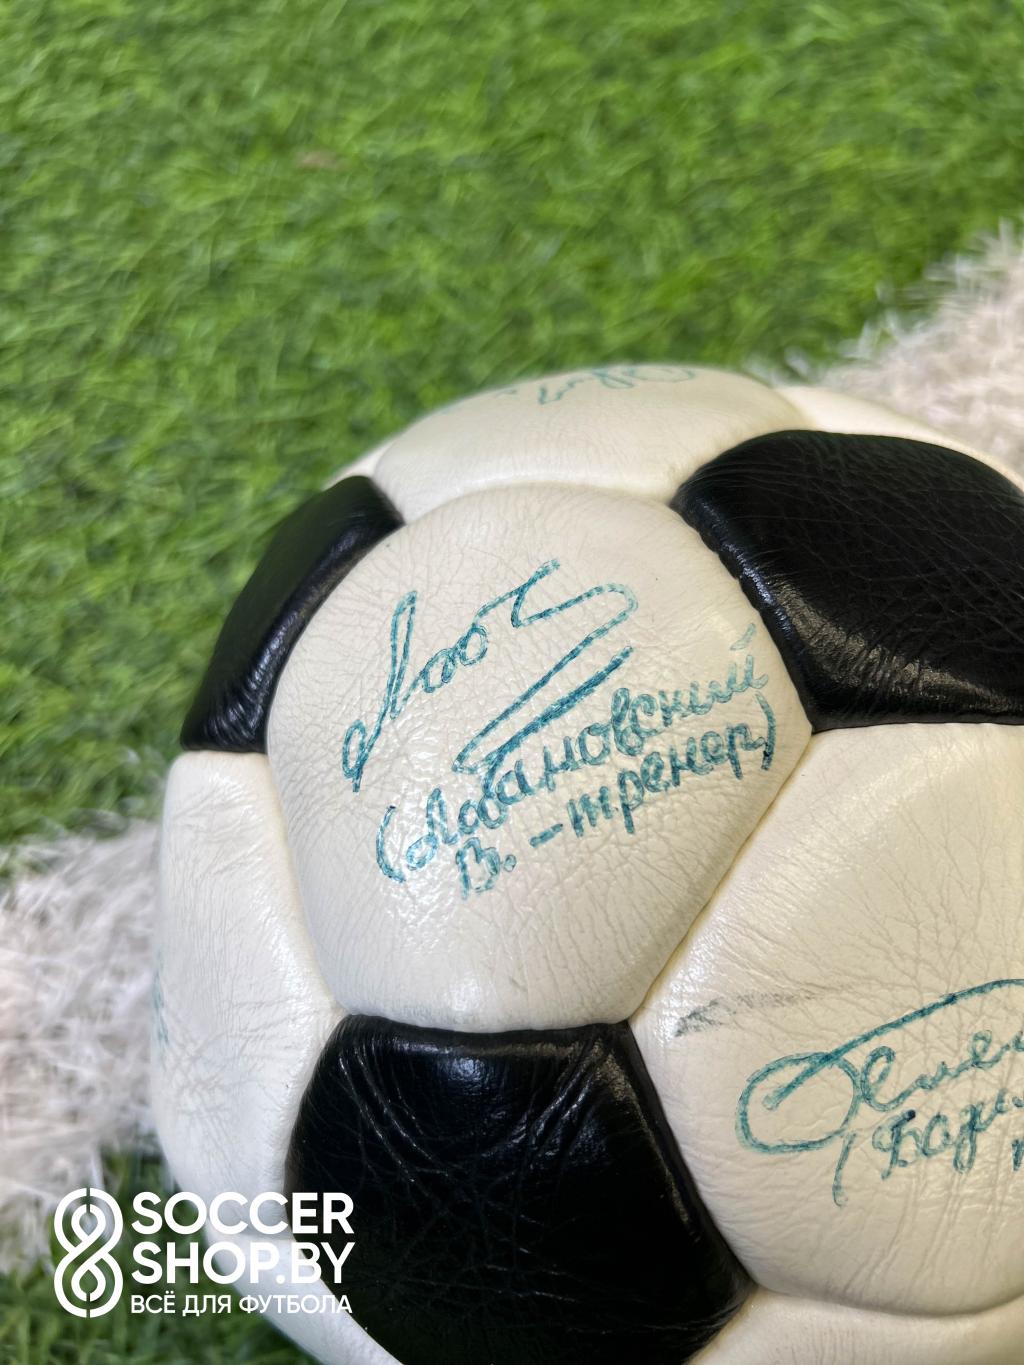 Мяч с автографами футболистов киевского «Динамо» 1985-1986 года